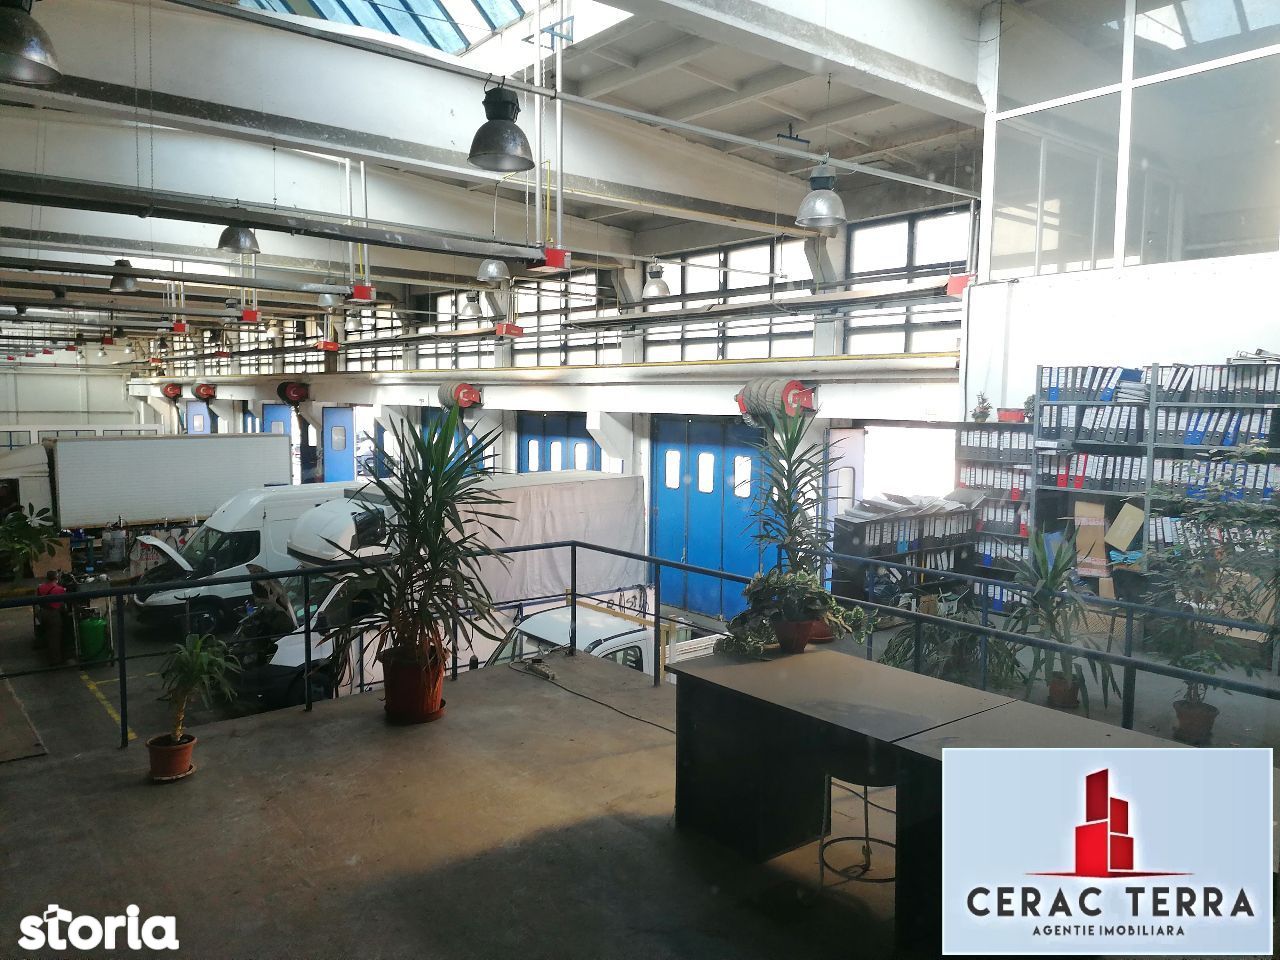 Spatiu productie/comercial/servicii in Brasov # CERACTERRA